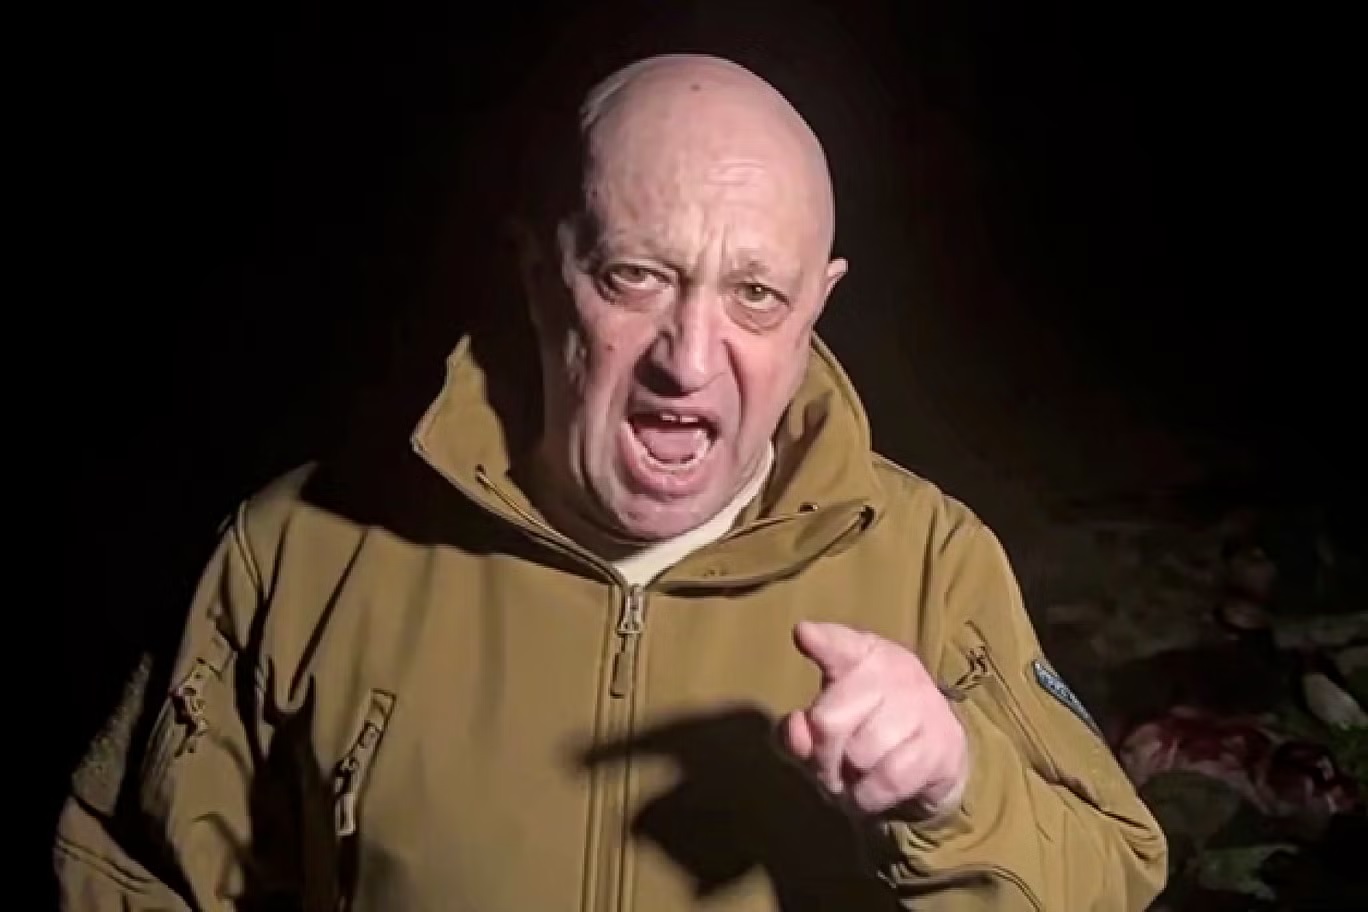 بريغوجين في أحد مقاطع الفيديو الصاخبة التي نشرها ضد القيادة العسكرية الروسية (أ ب)